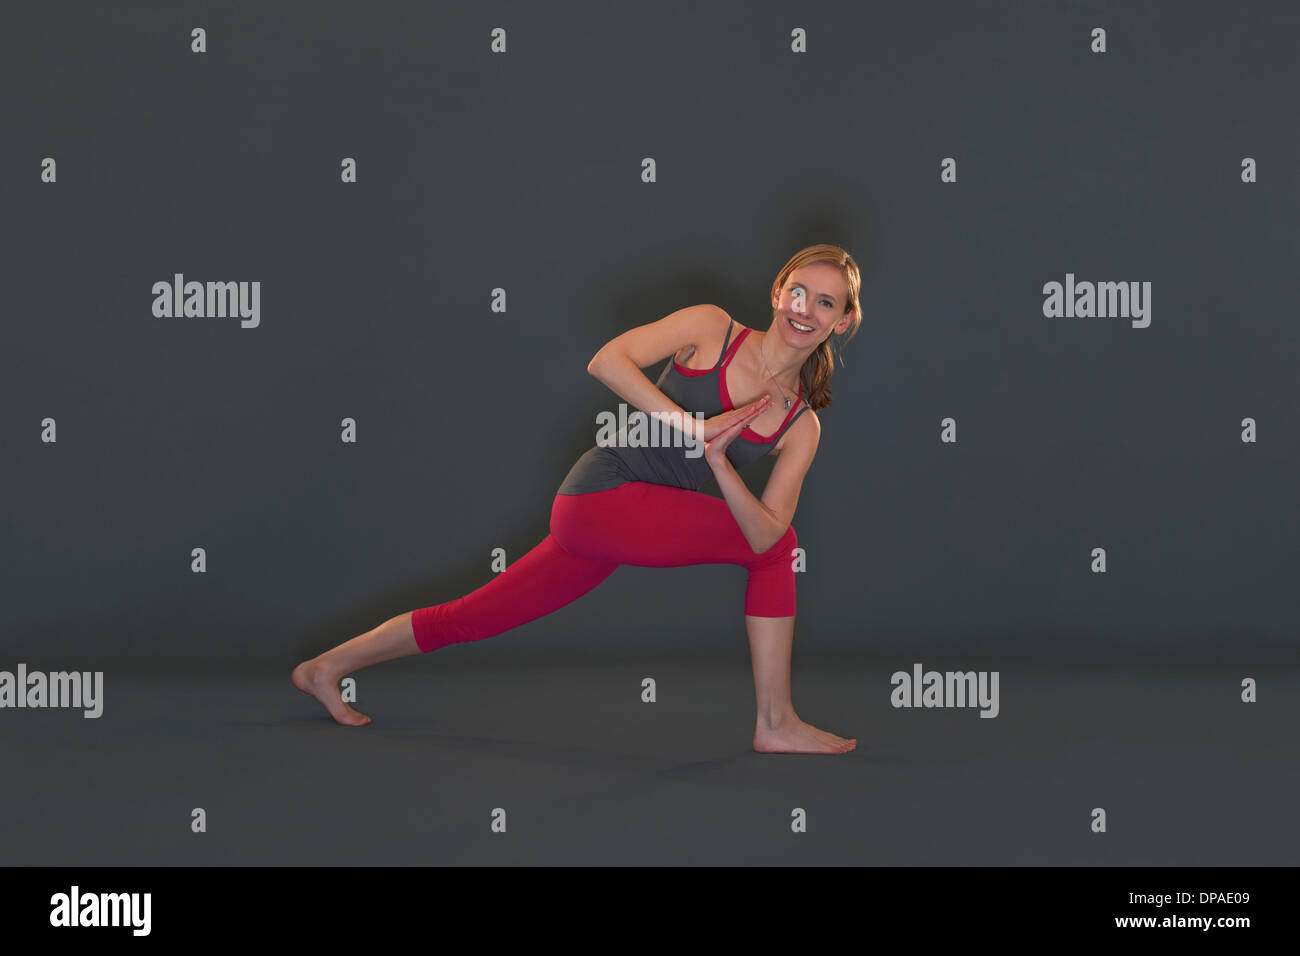 Mujer en pose yoga sobre fondo gris Foto de stock